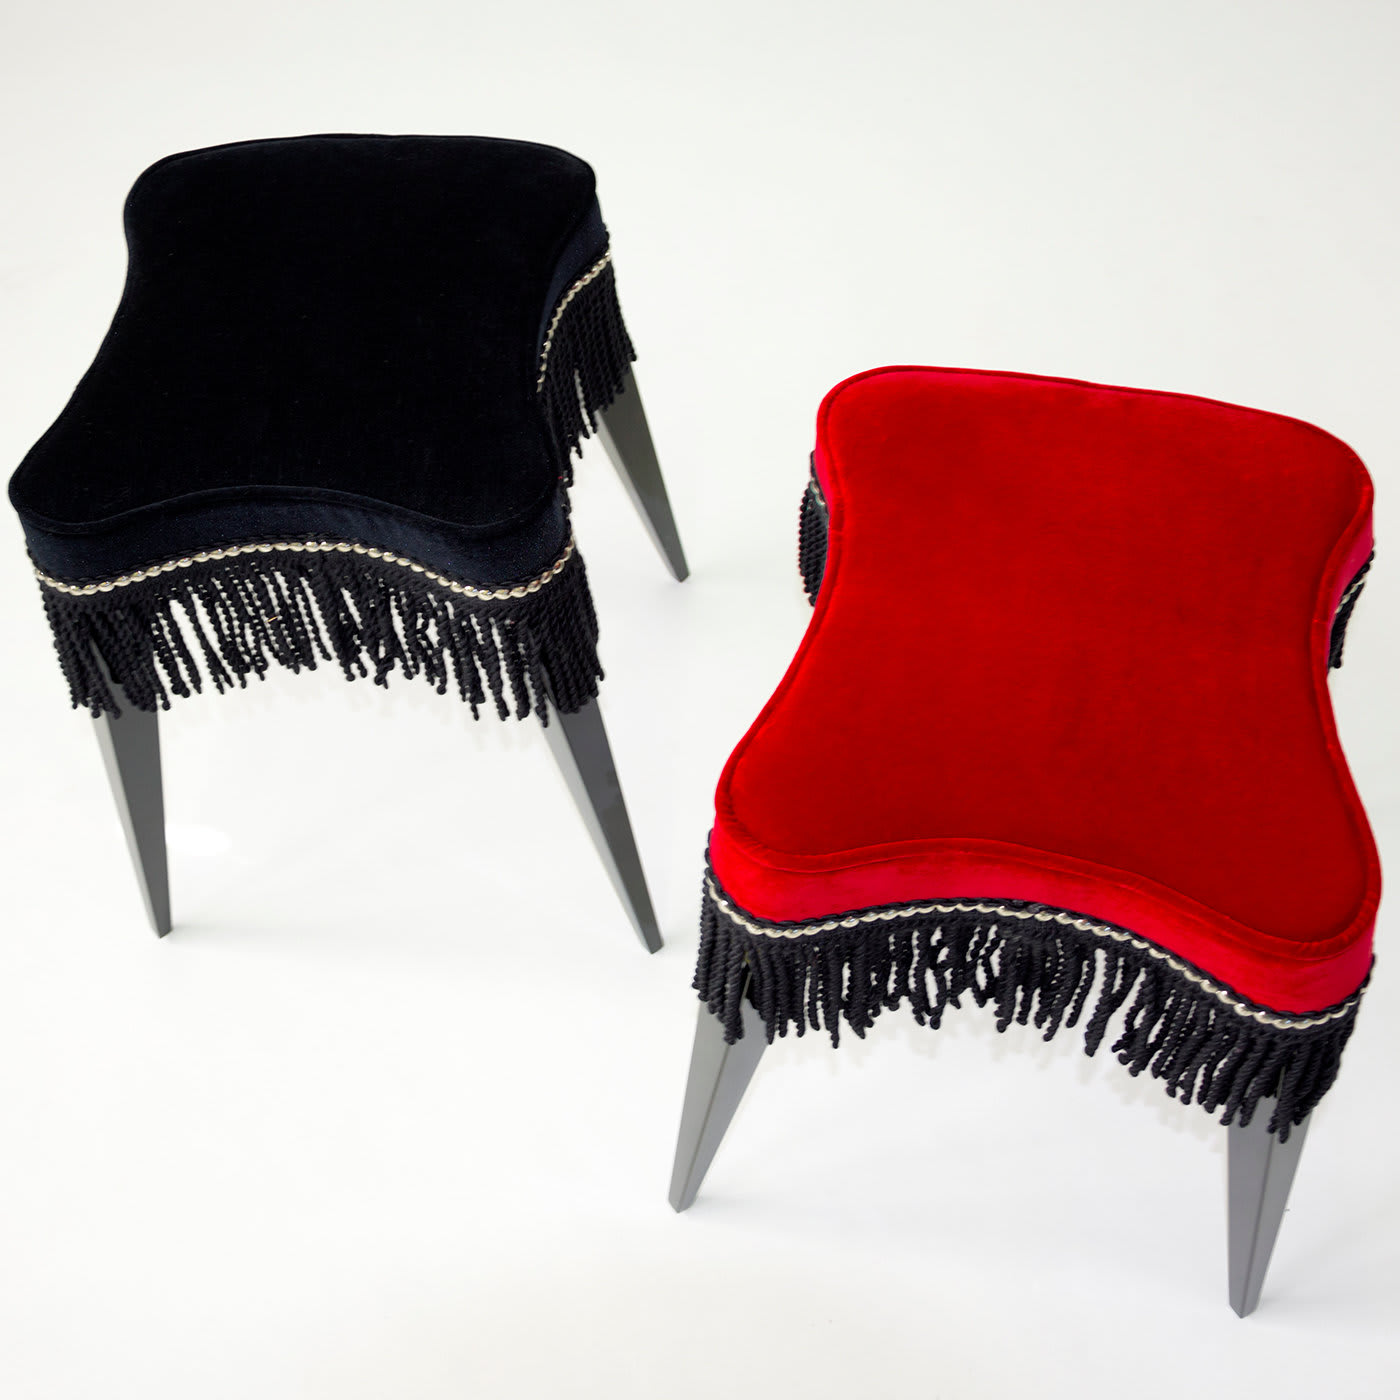 Burlesque stool in red velvet - Extroverso